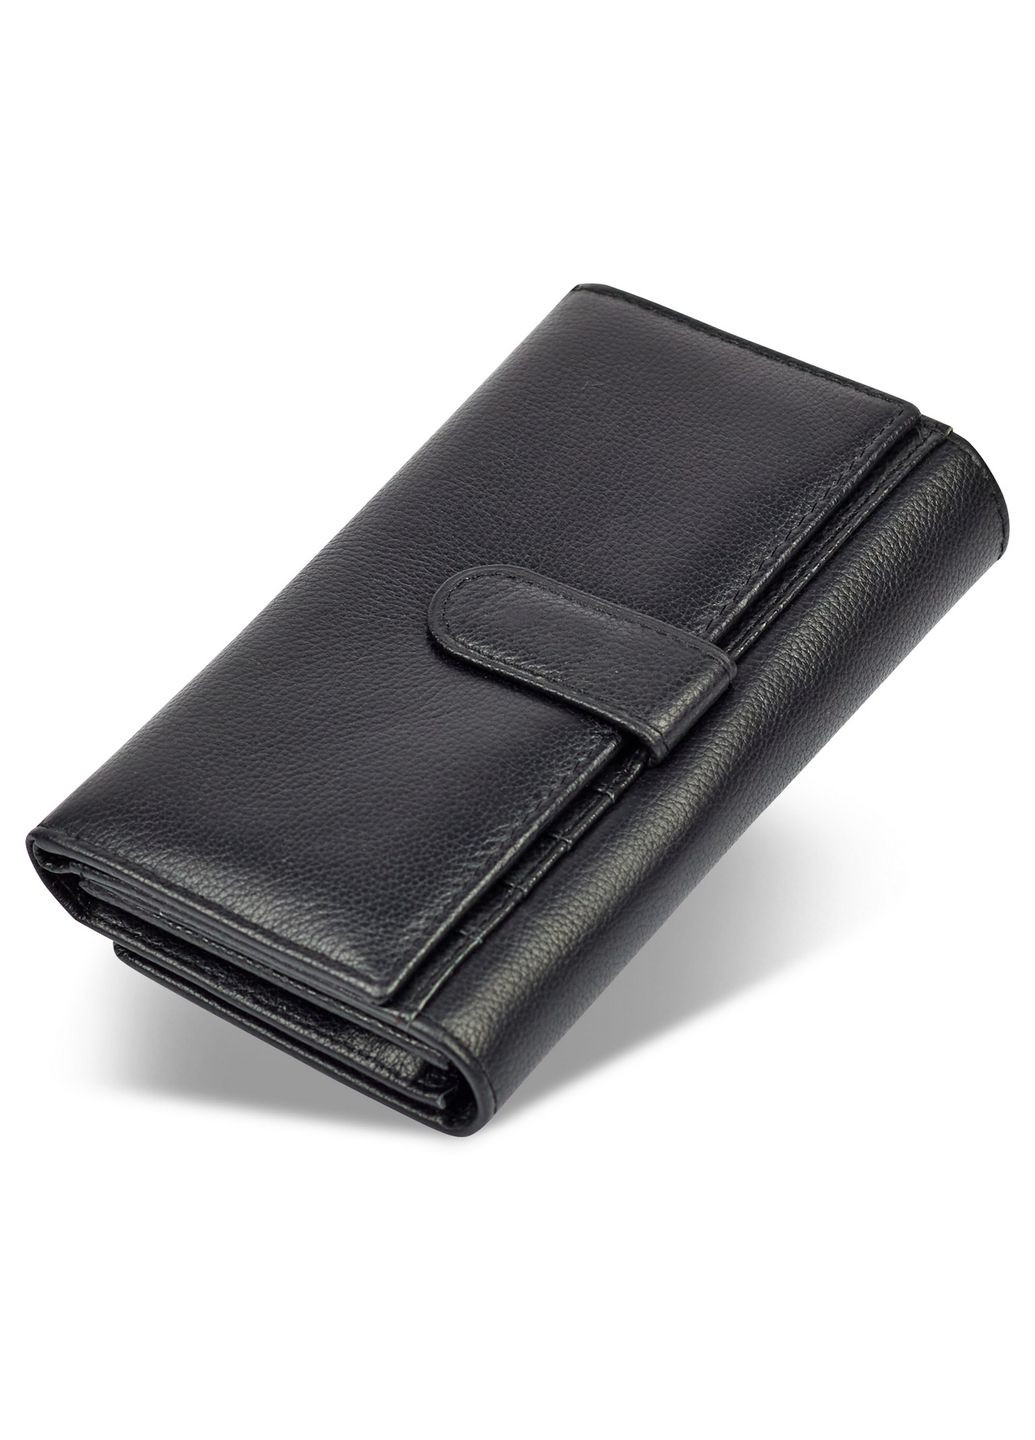 Шкіряний гаманець st leather (288136251)